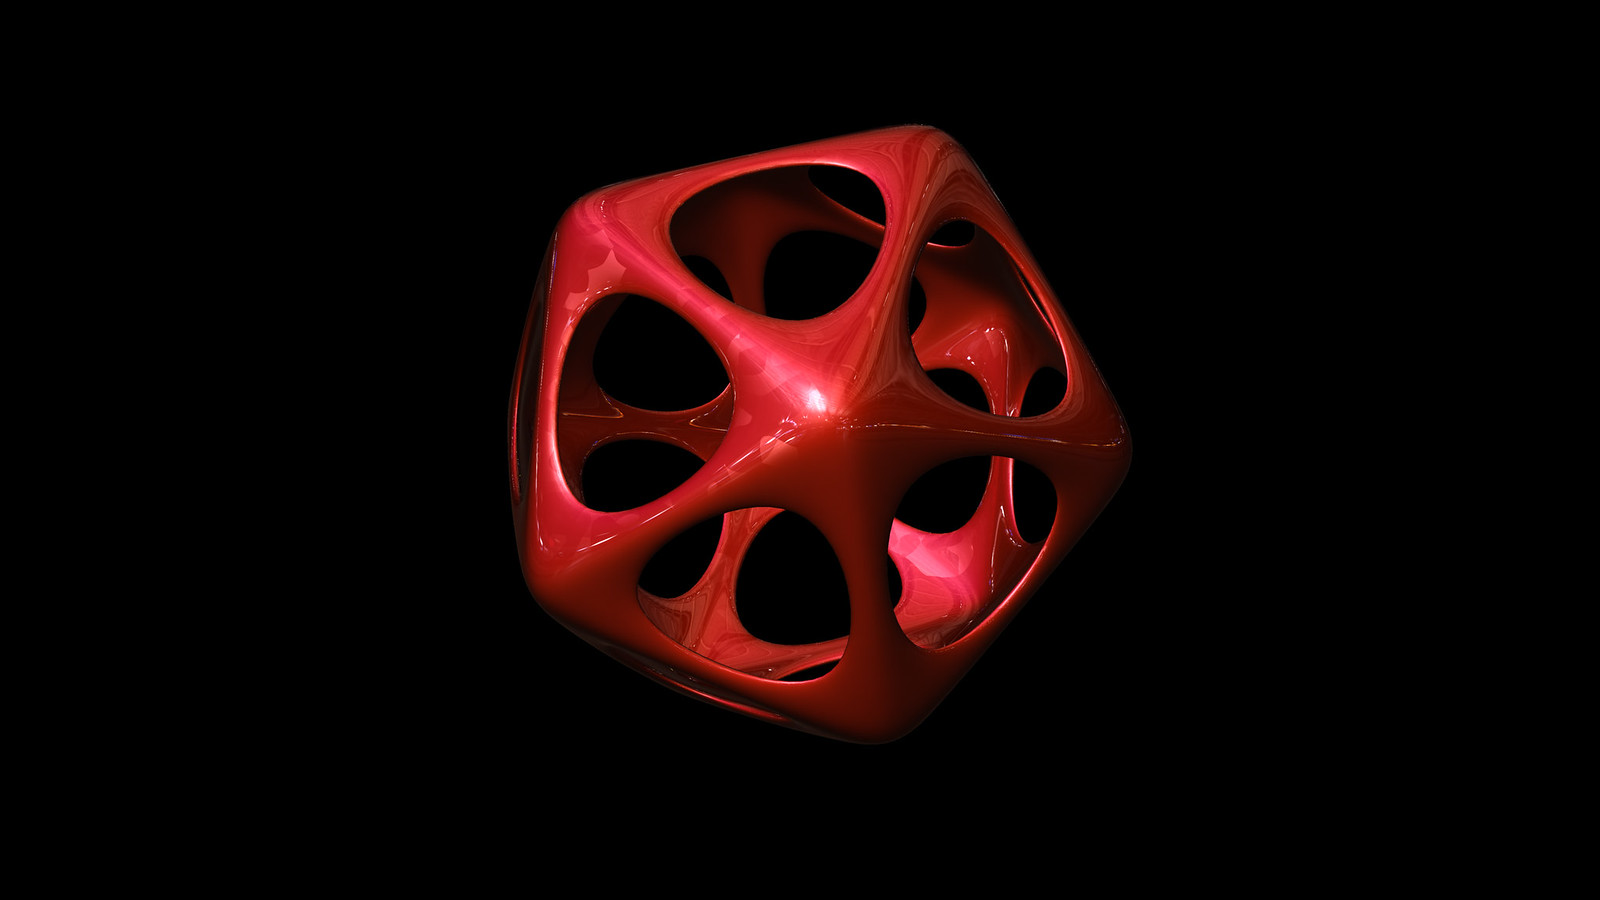 Icosahedron soft